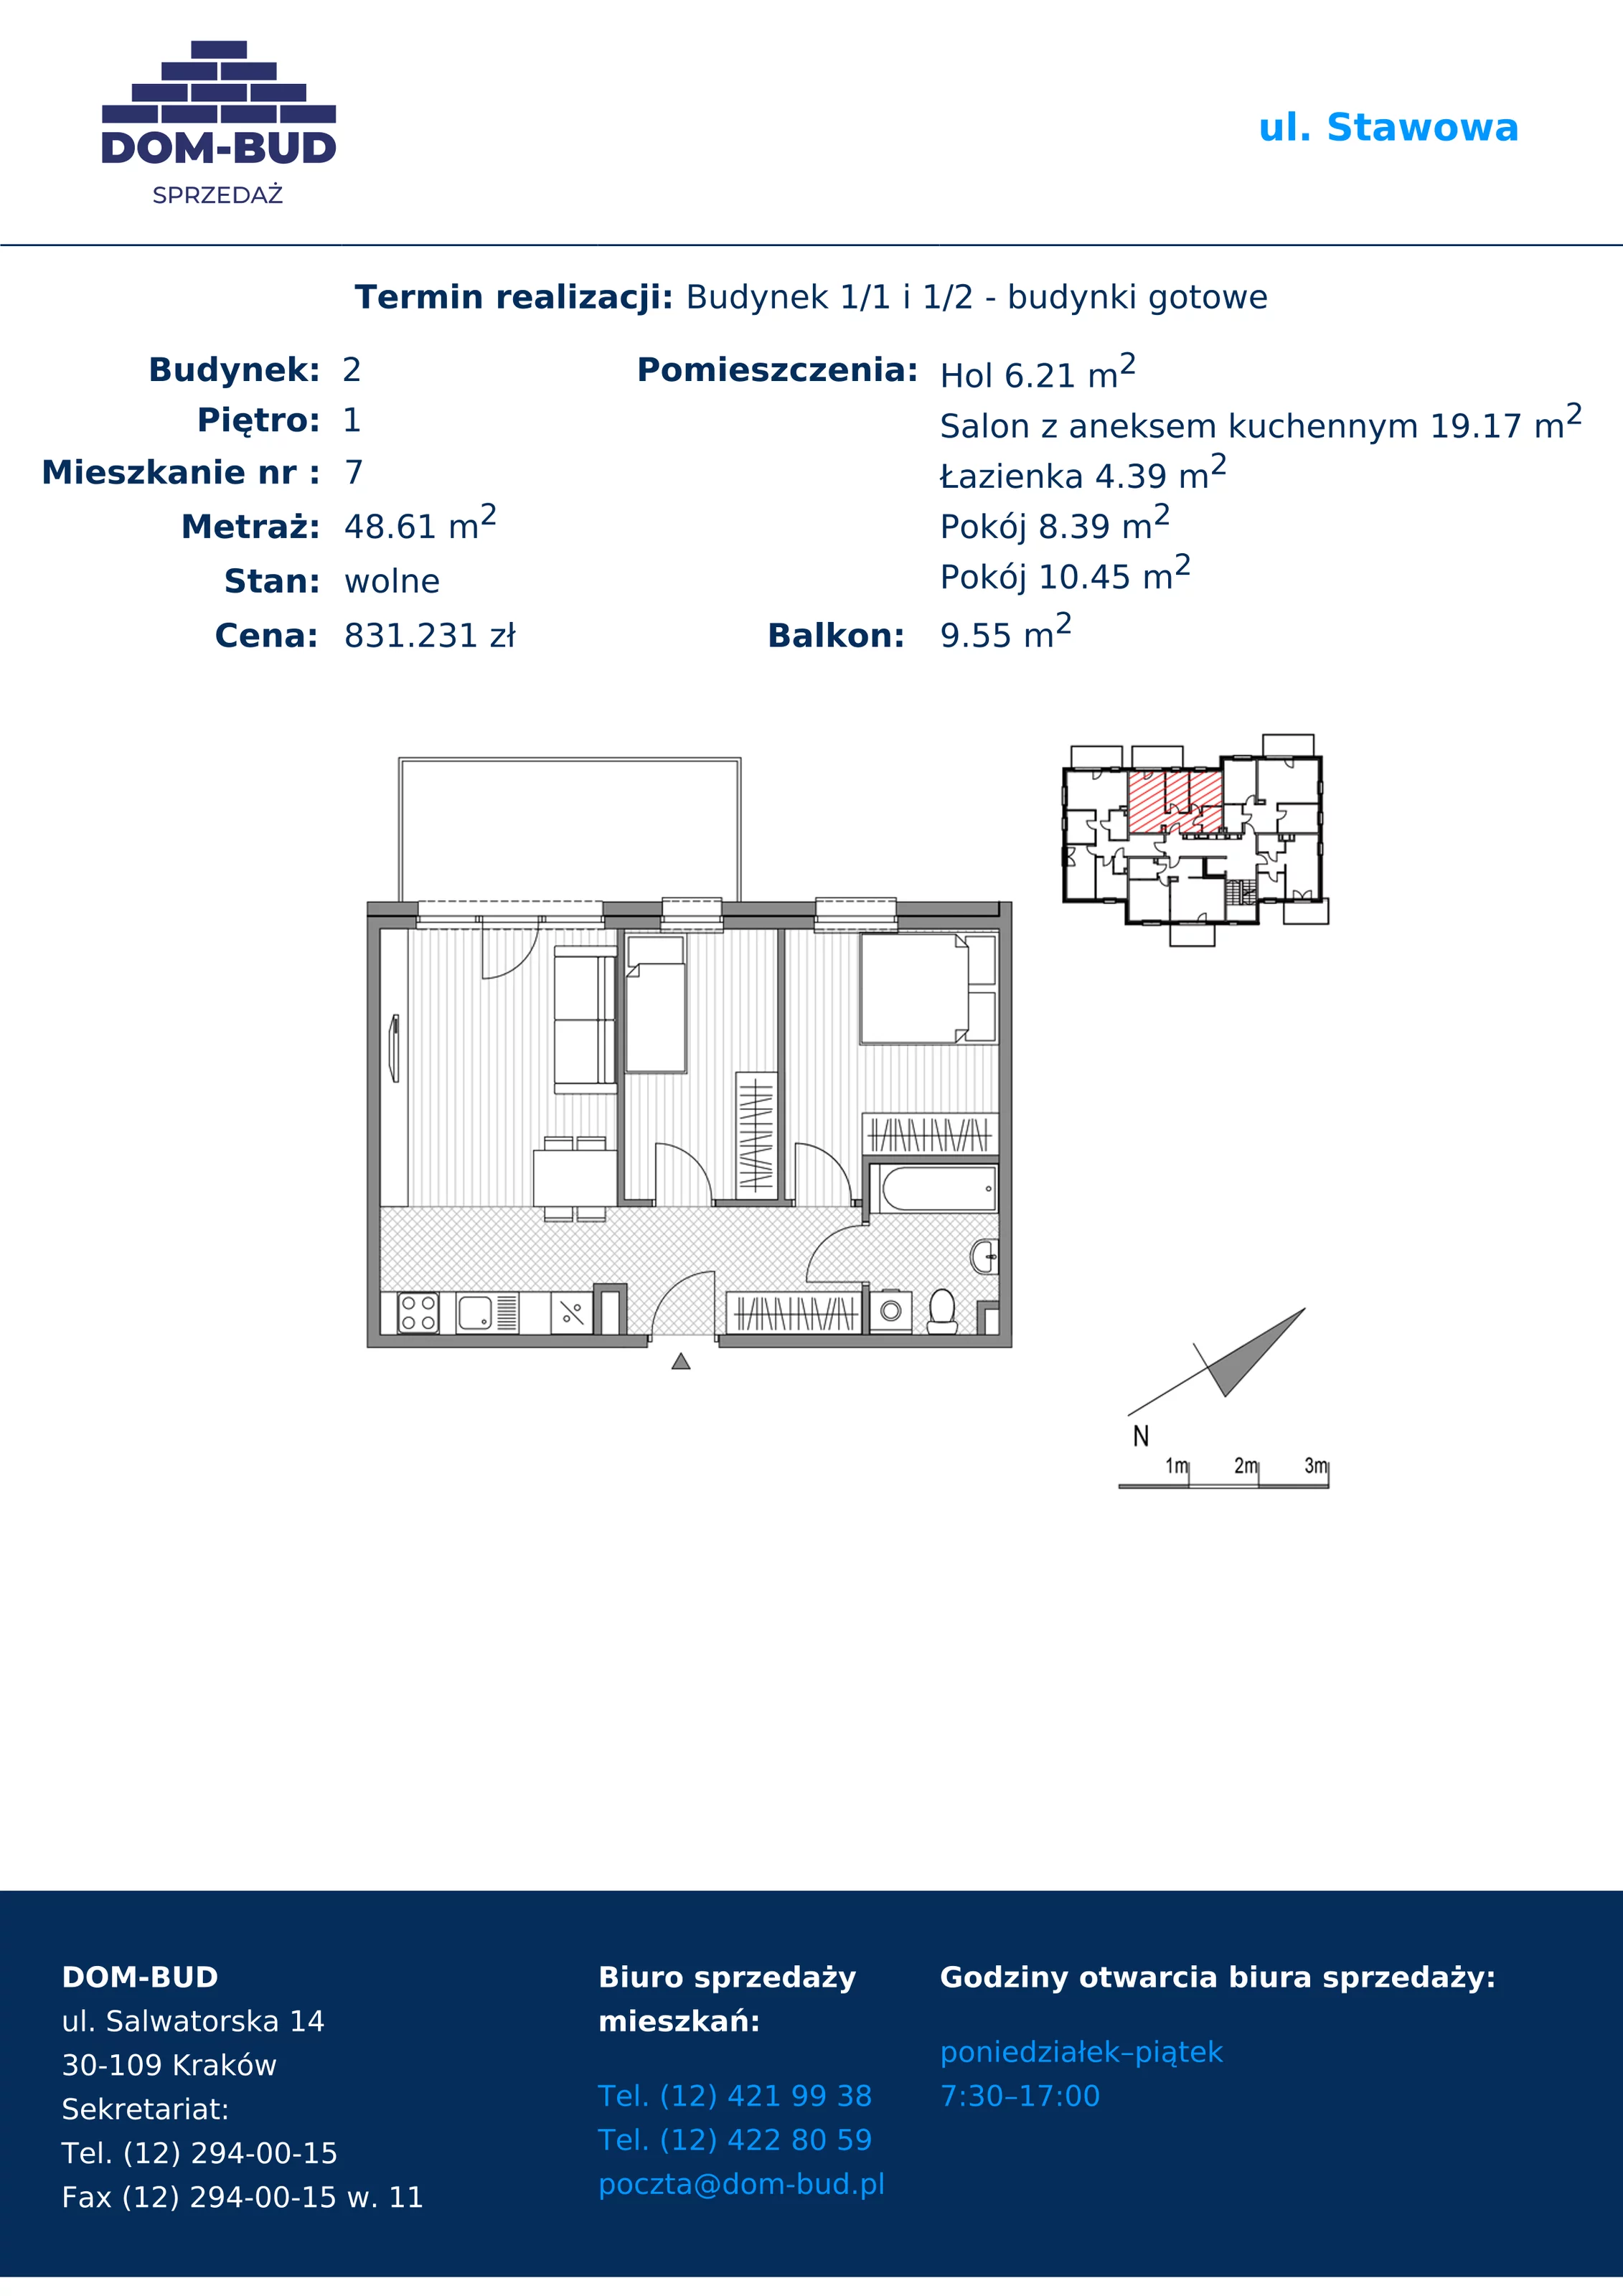 Mieszkanie 48,61 m², piętro 1, oferta nr 1/2-7, ul. Stawowa, Kraków, Prądnik Biały, Bronowice Wielkie, ul. Stawowa 242